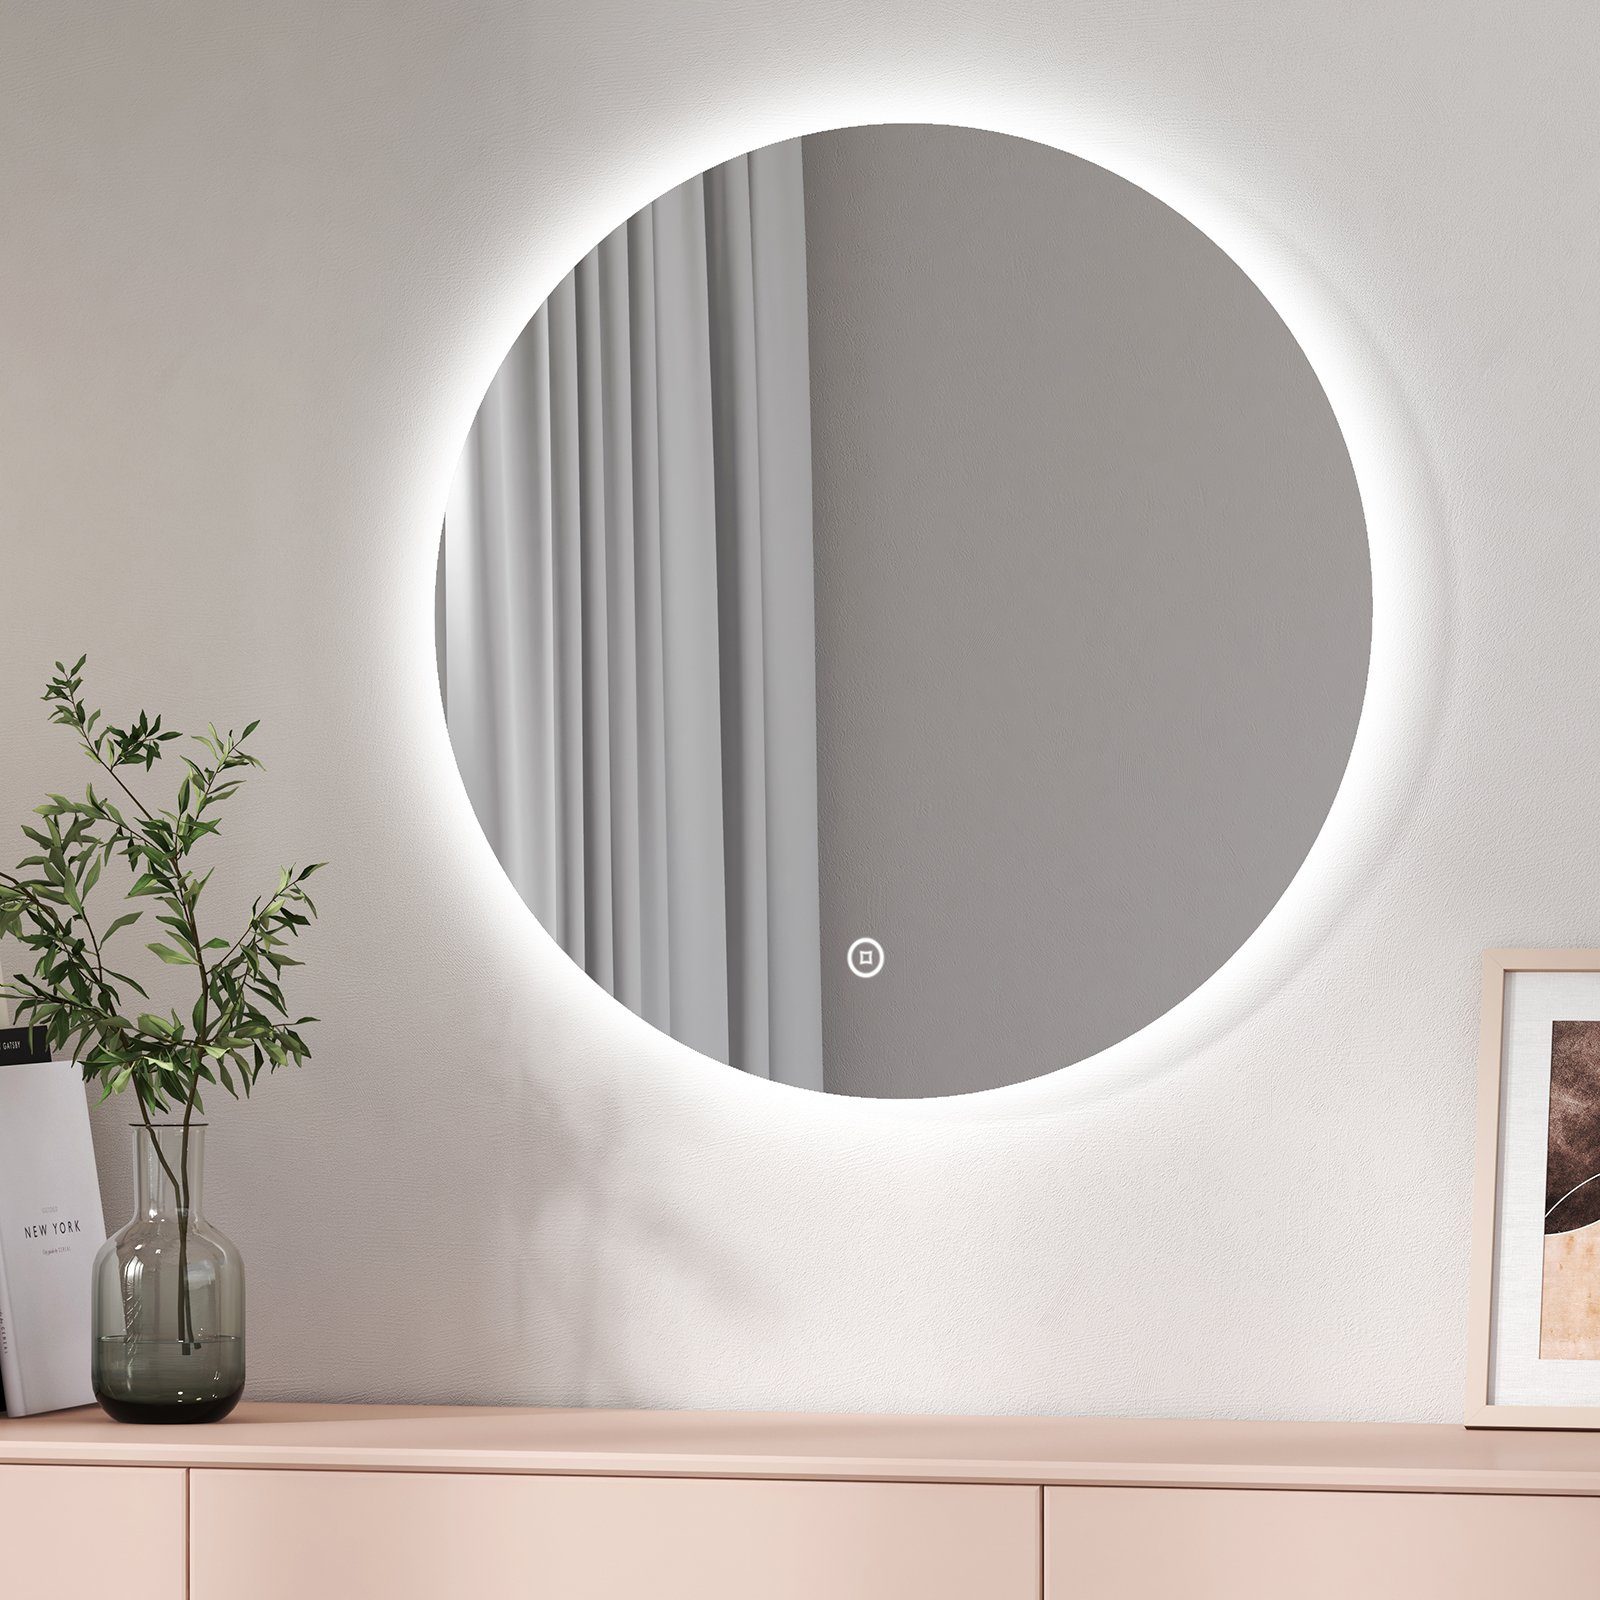 EMKE Badspiegel Badspiegel Rund mit Beleuchtung LED Badezimmerspiegel Wandspiegel, 3 Farben des Lichts, Dimmbar, Intelligenter Touchschalter